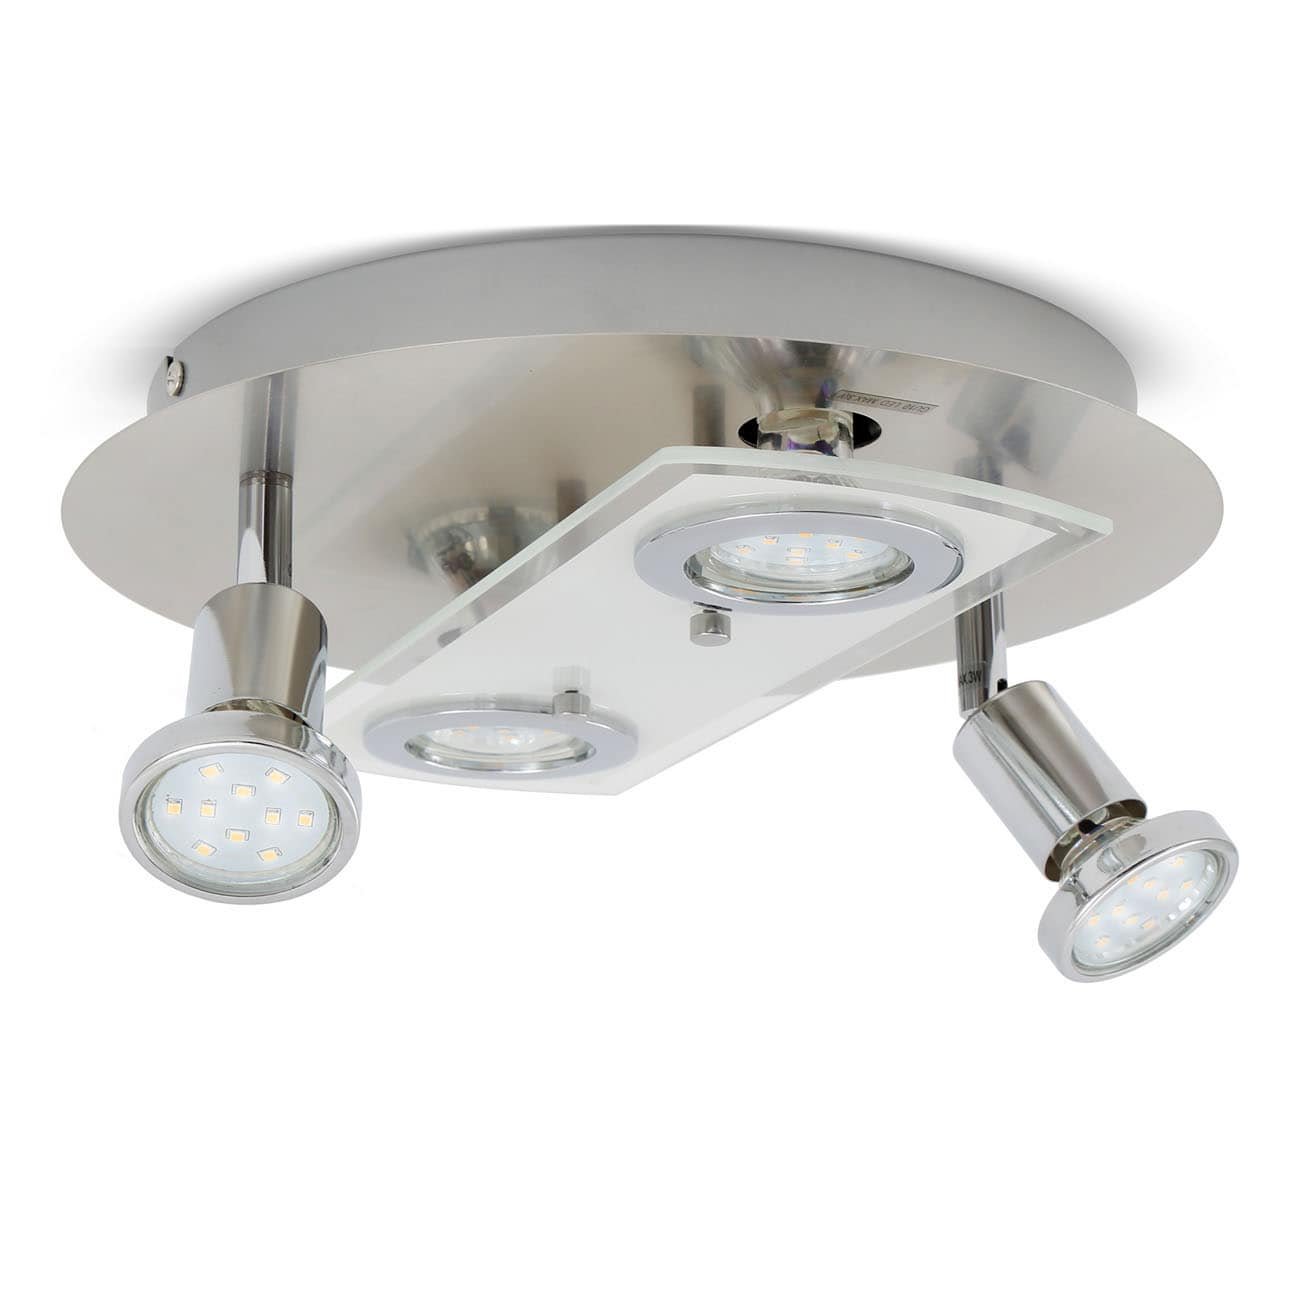 LED Deckenleuchte 29cm - 4-flammig - moderne Deckenlampe 2 Spots schwenkbar Glas Metall GU10 12W 1000lm warmweiß | Matt-Nickel - 1